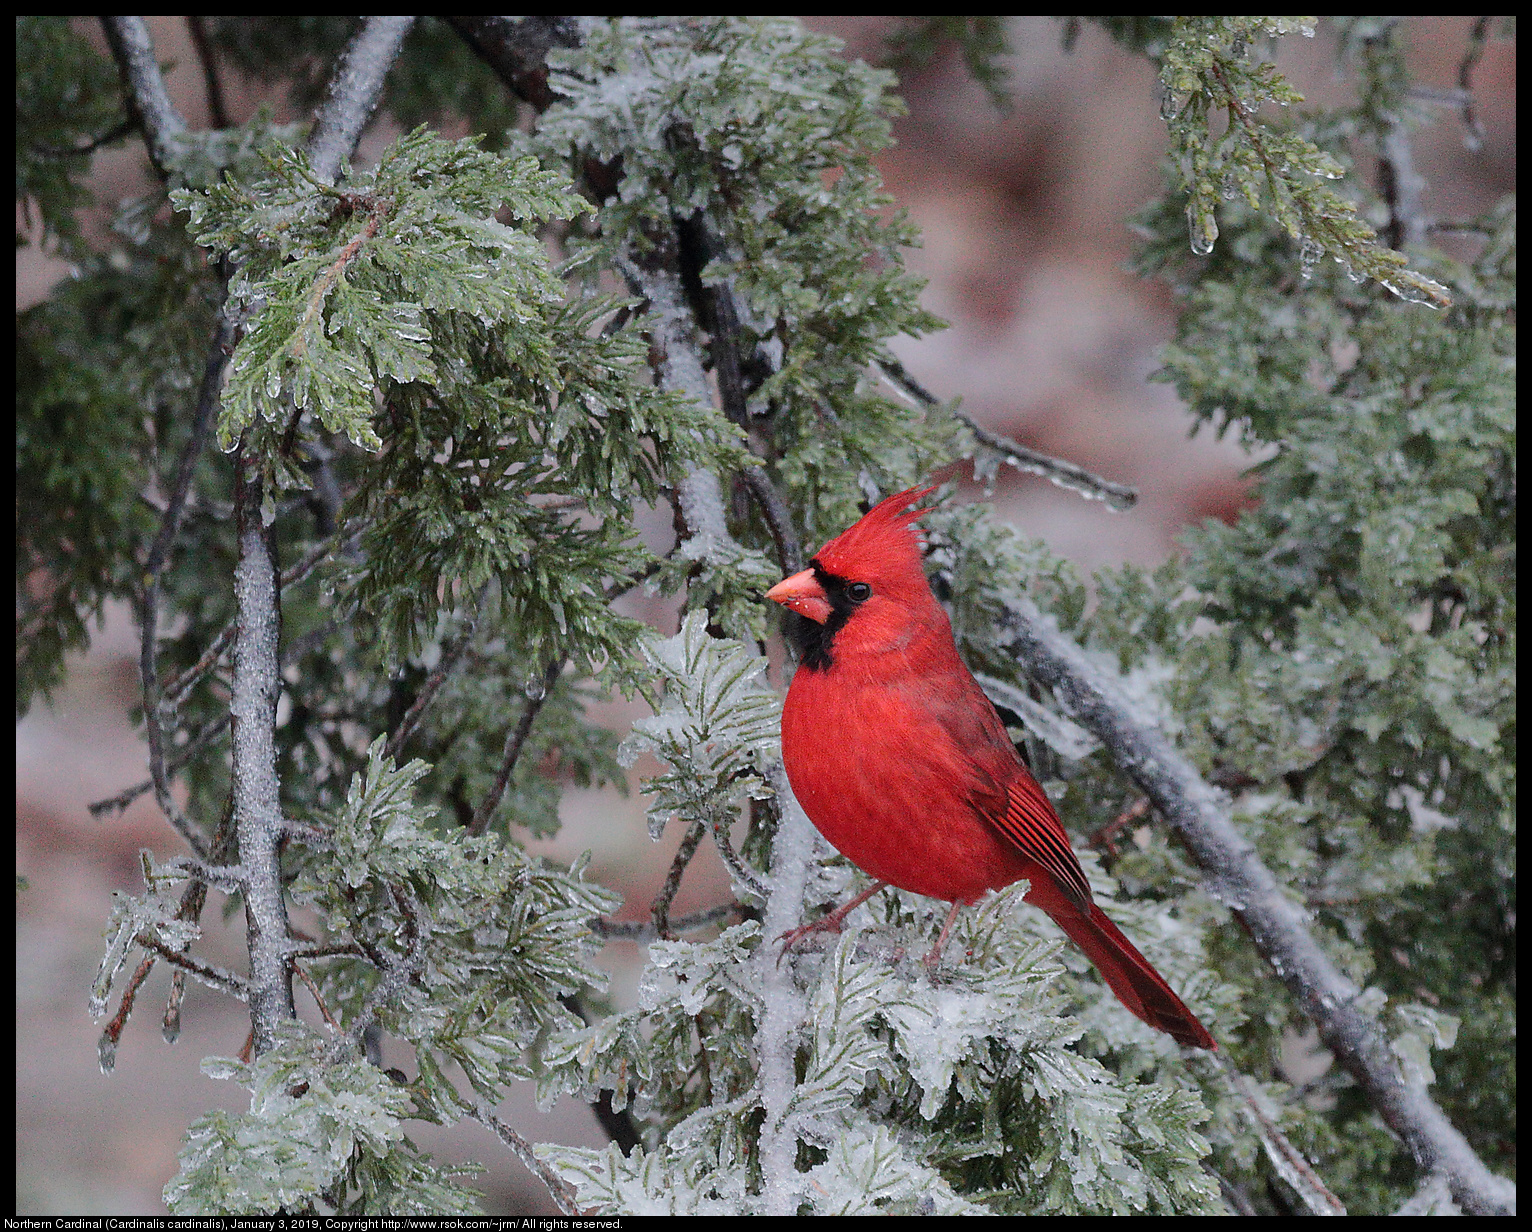 Northern Cardinal (Cardinalis cardinalis), January 3, 2019